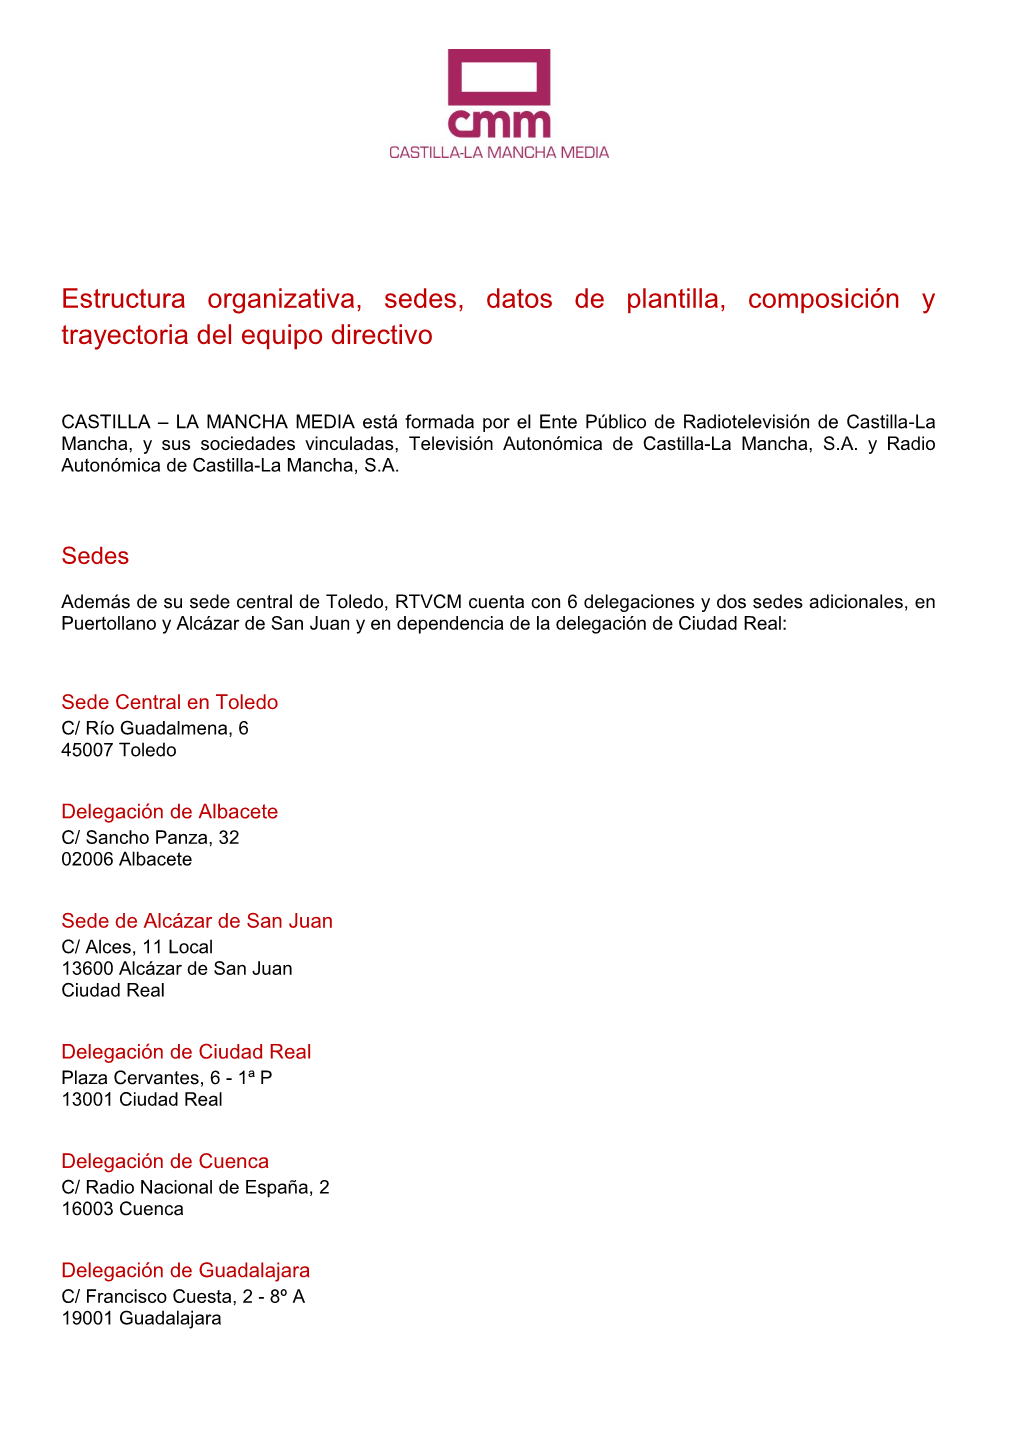 Estructura Organizativa, Sedes, Datos De Plantilla, Composición Y Trayectoria Del Equipo Directivo